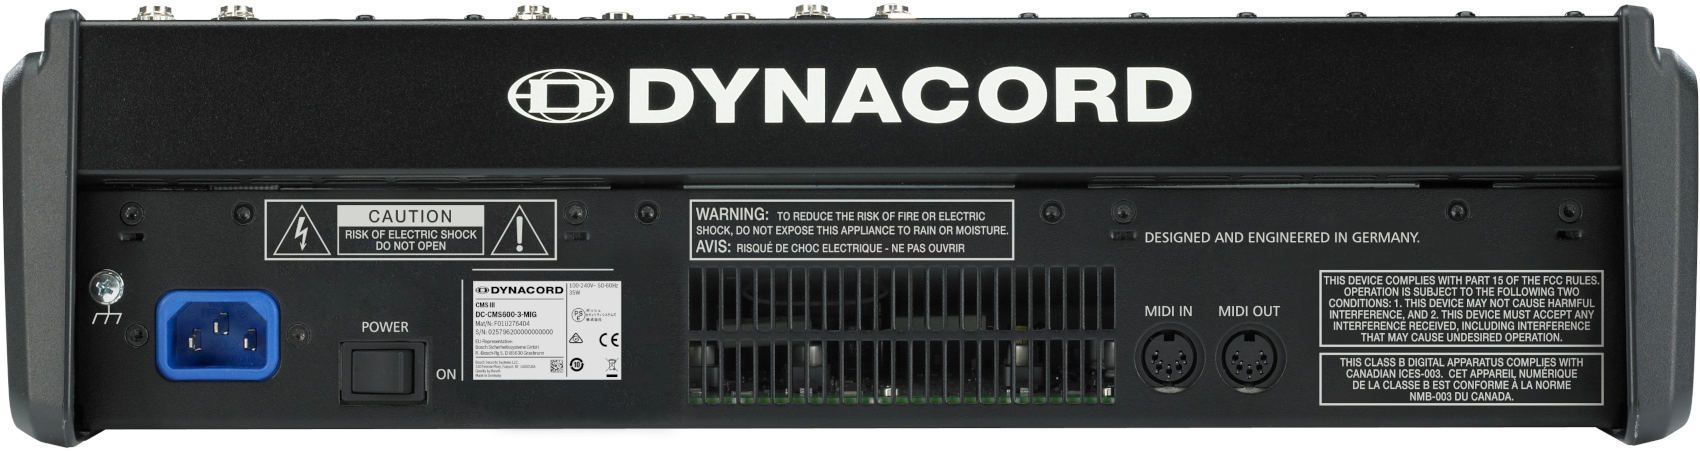 Dynacord CMS 600-3 - фото 3